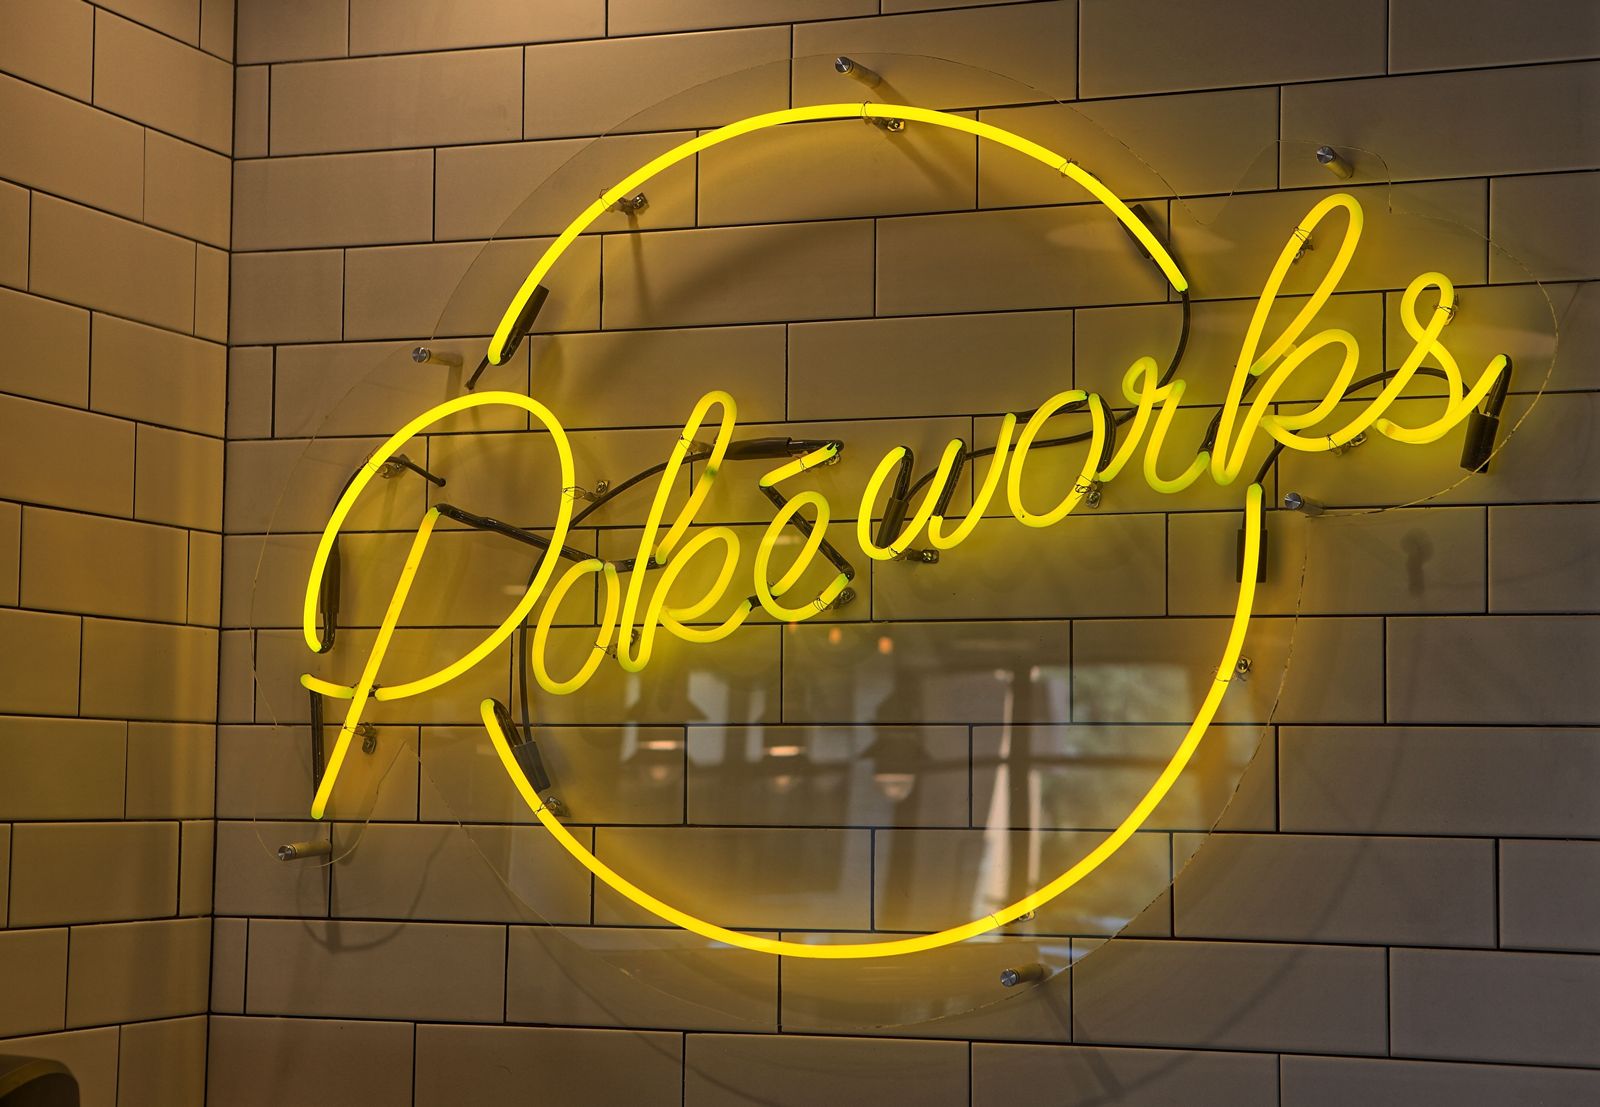 Pokeworks Appoints Restaurant-Industry Veteran Steve Heeley as CEO